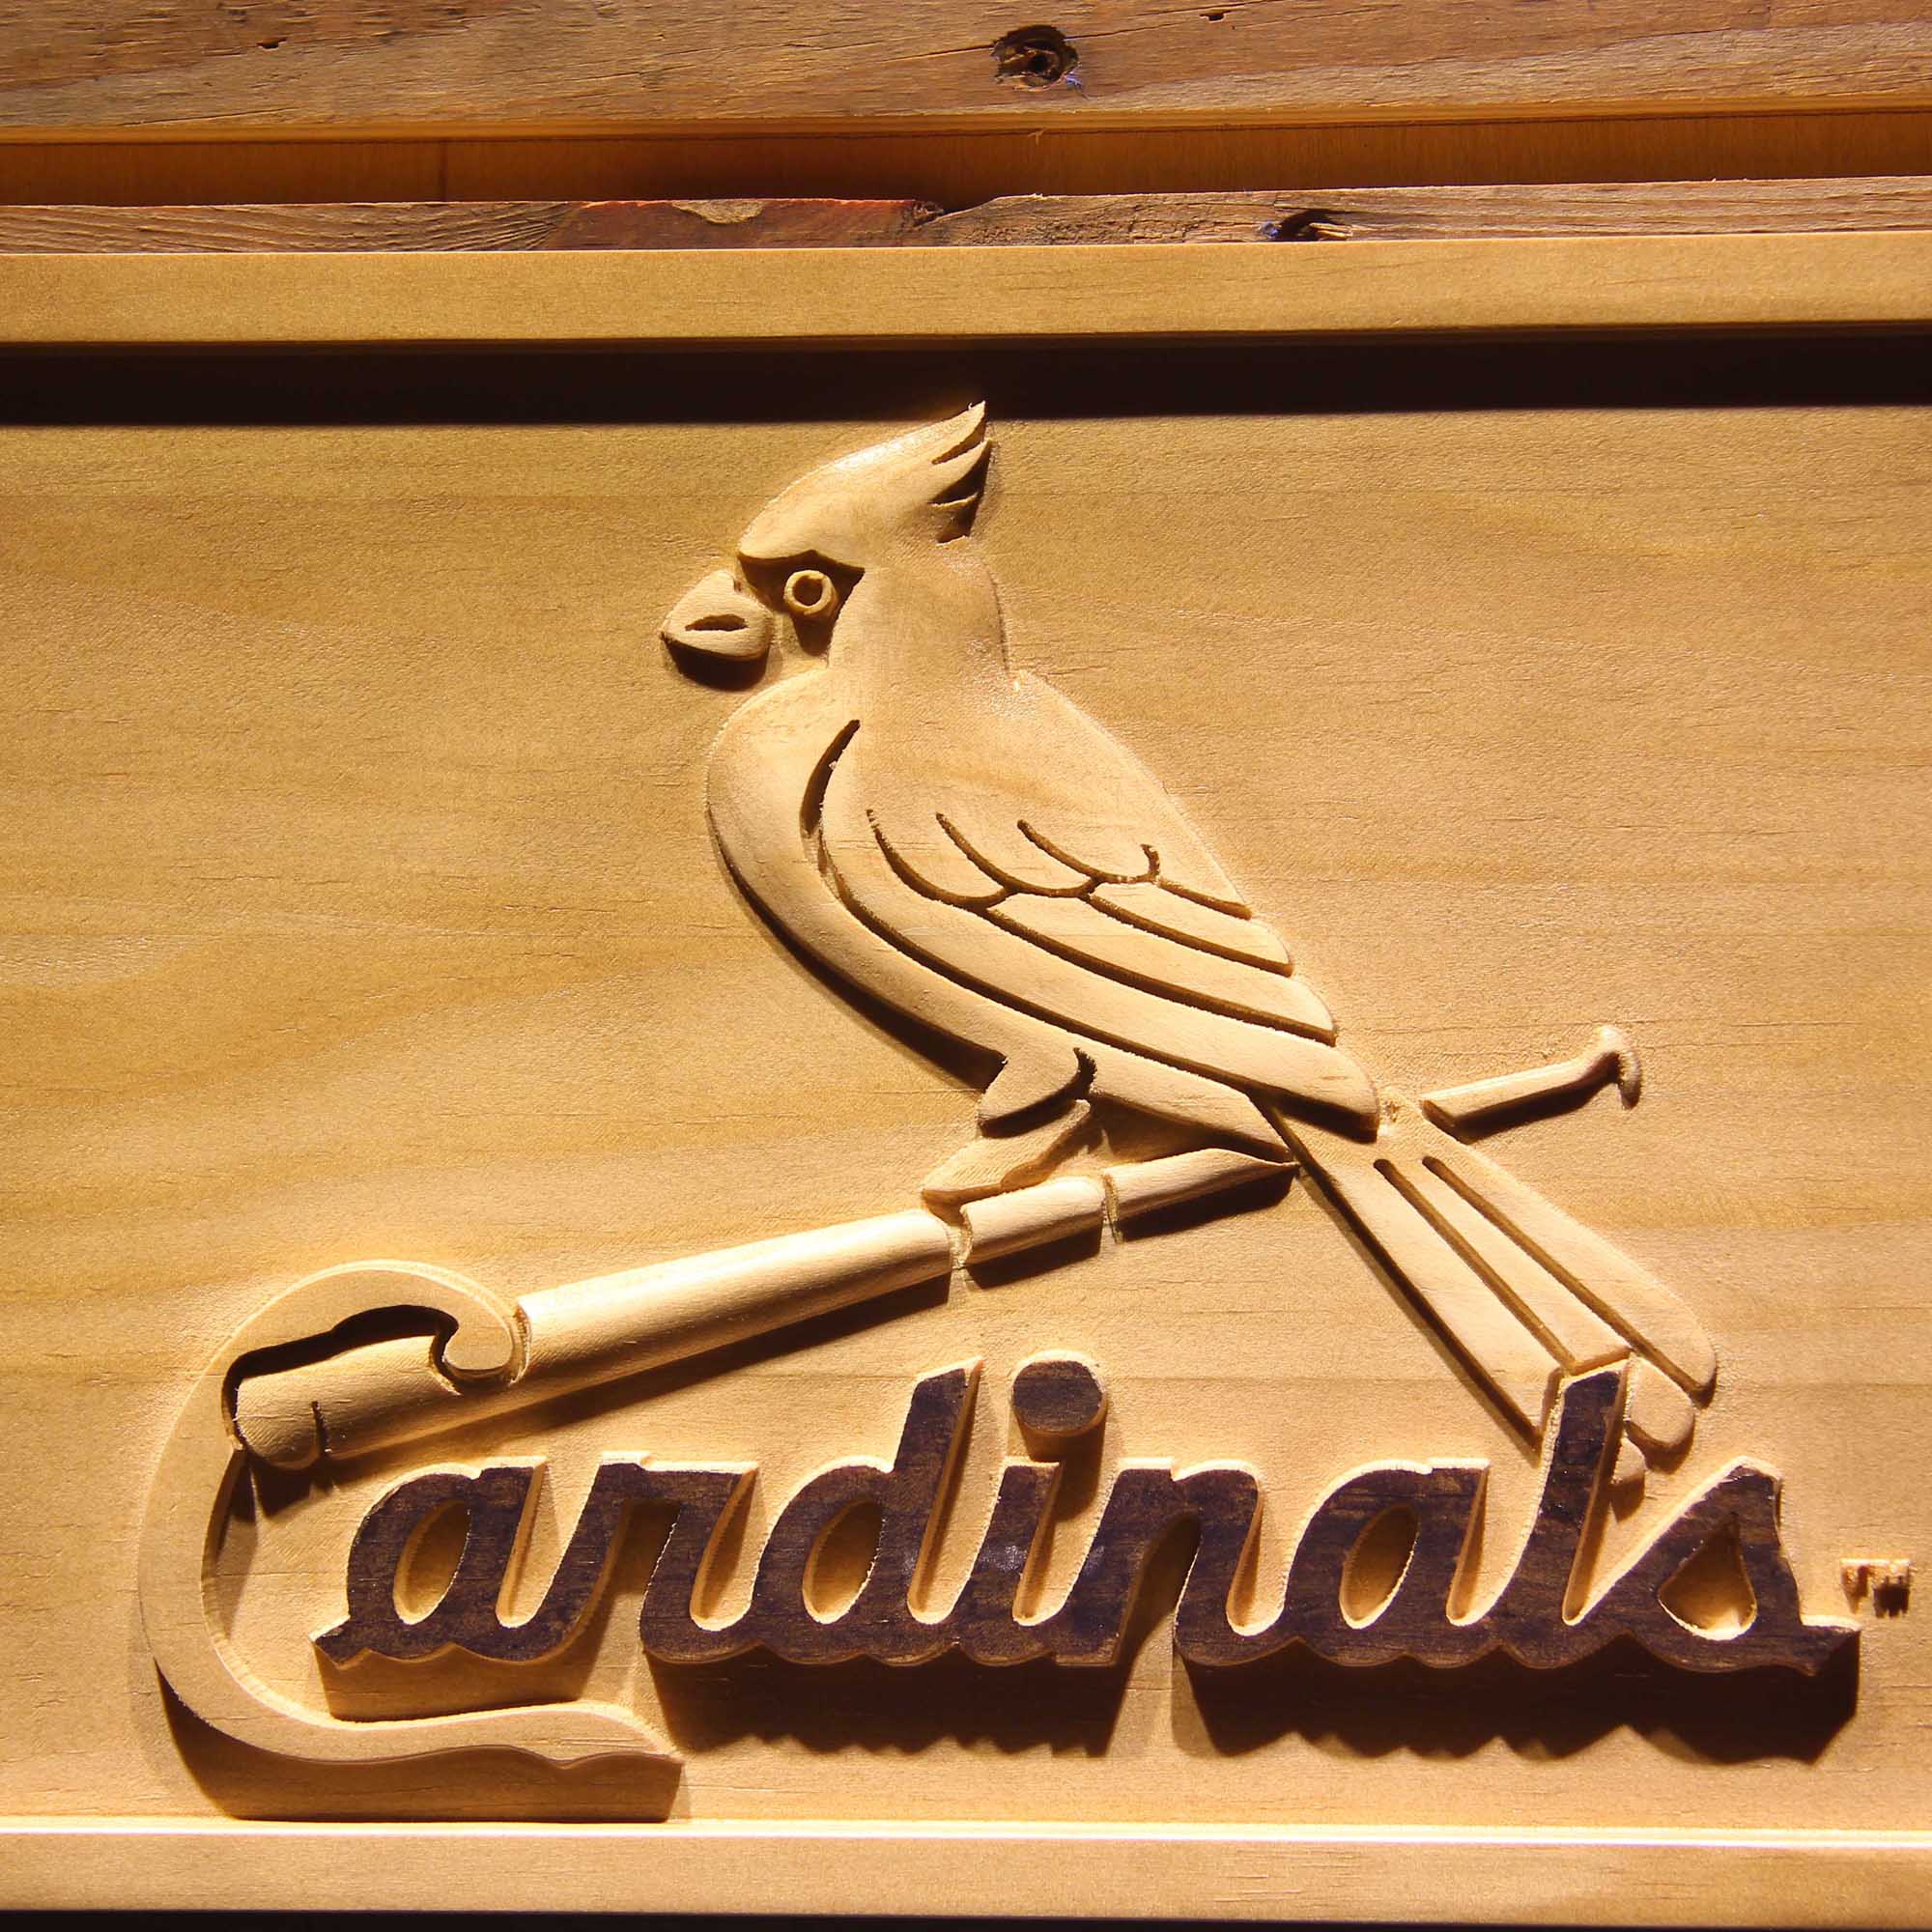 St. Louis Cardinals 3D Wooden Engrave Sign